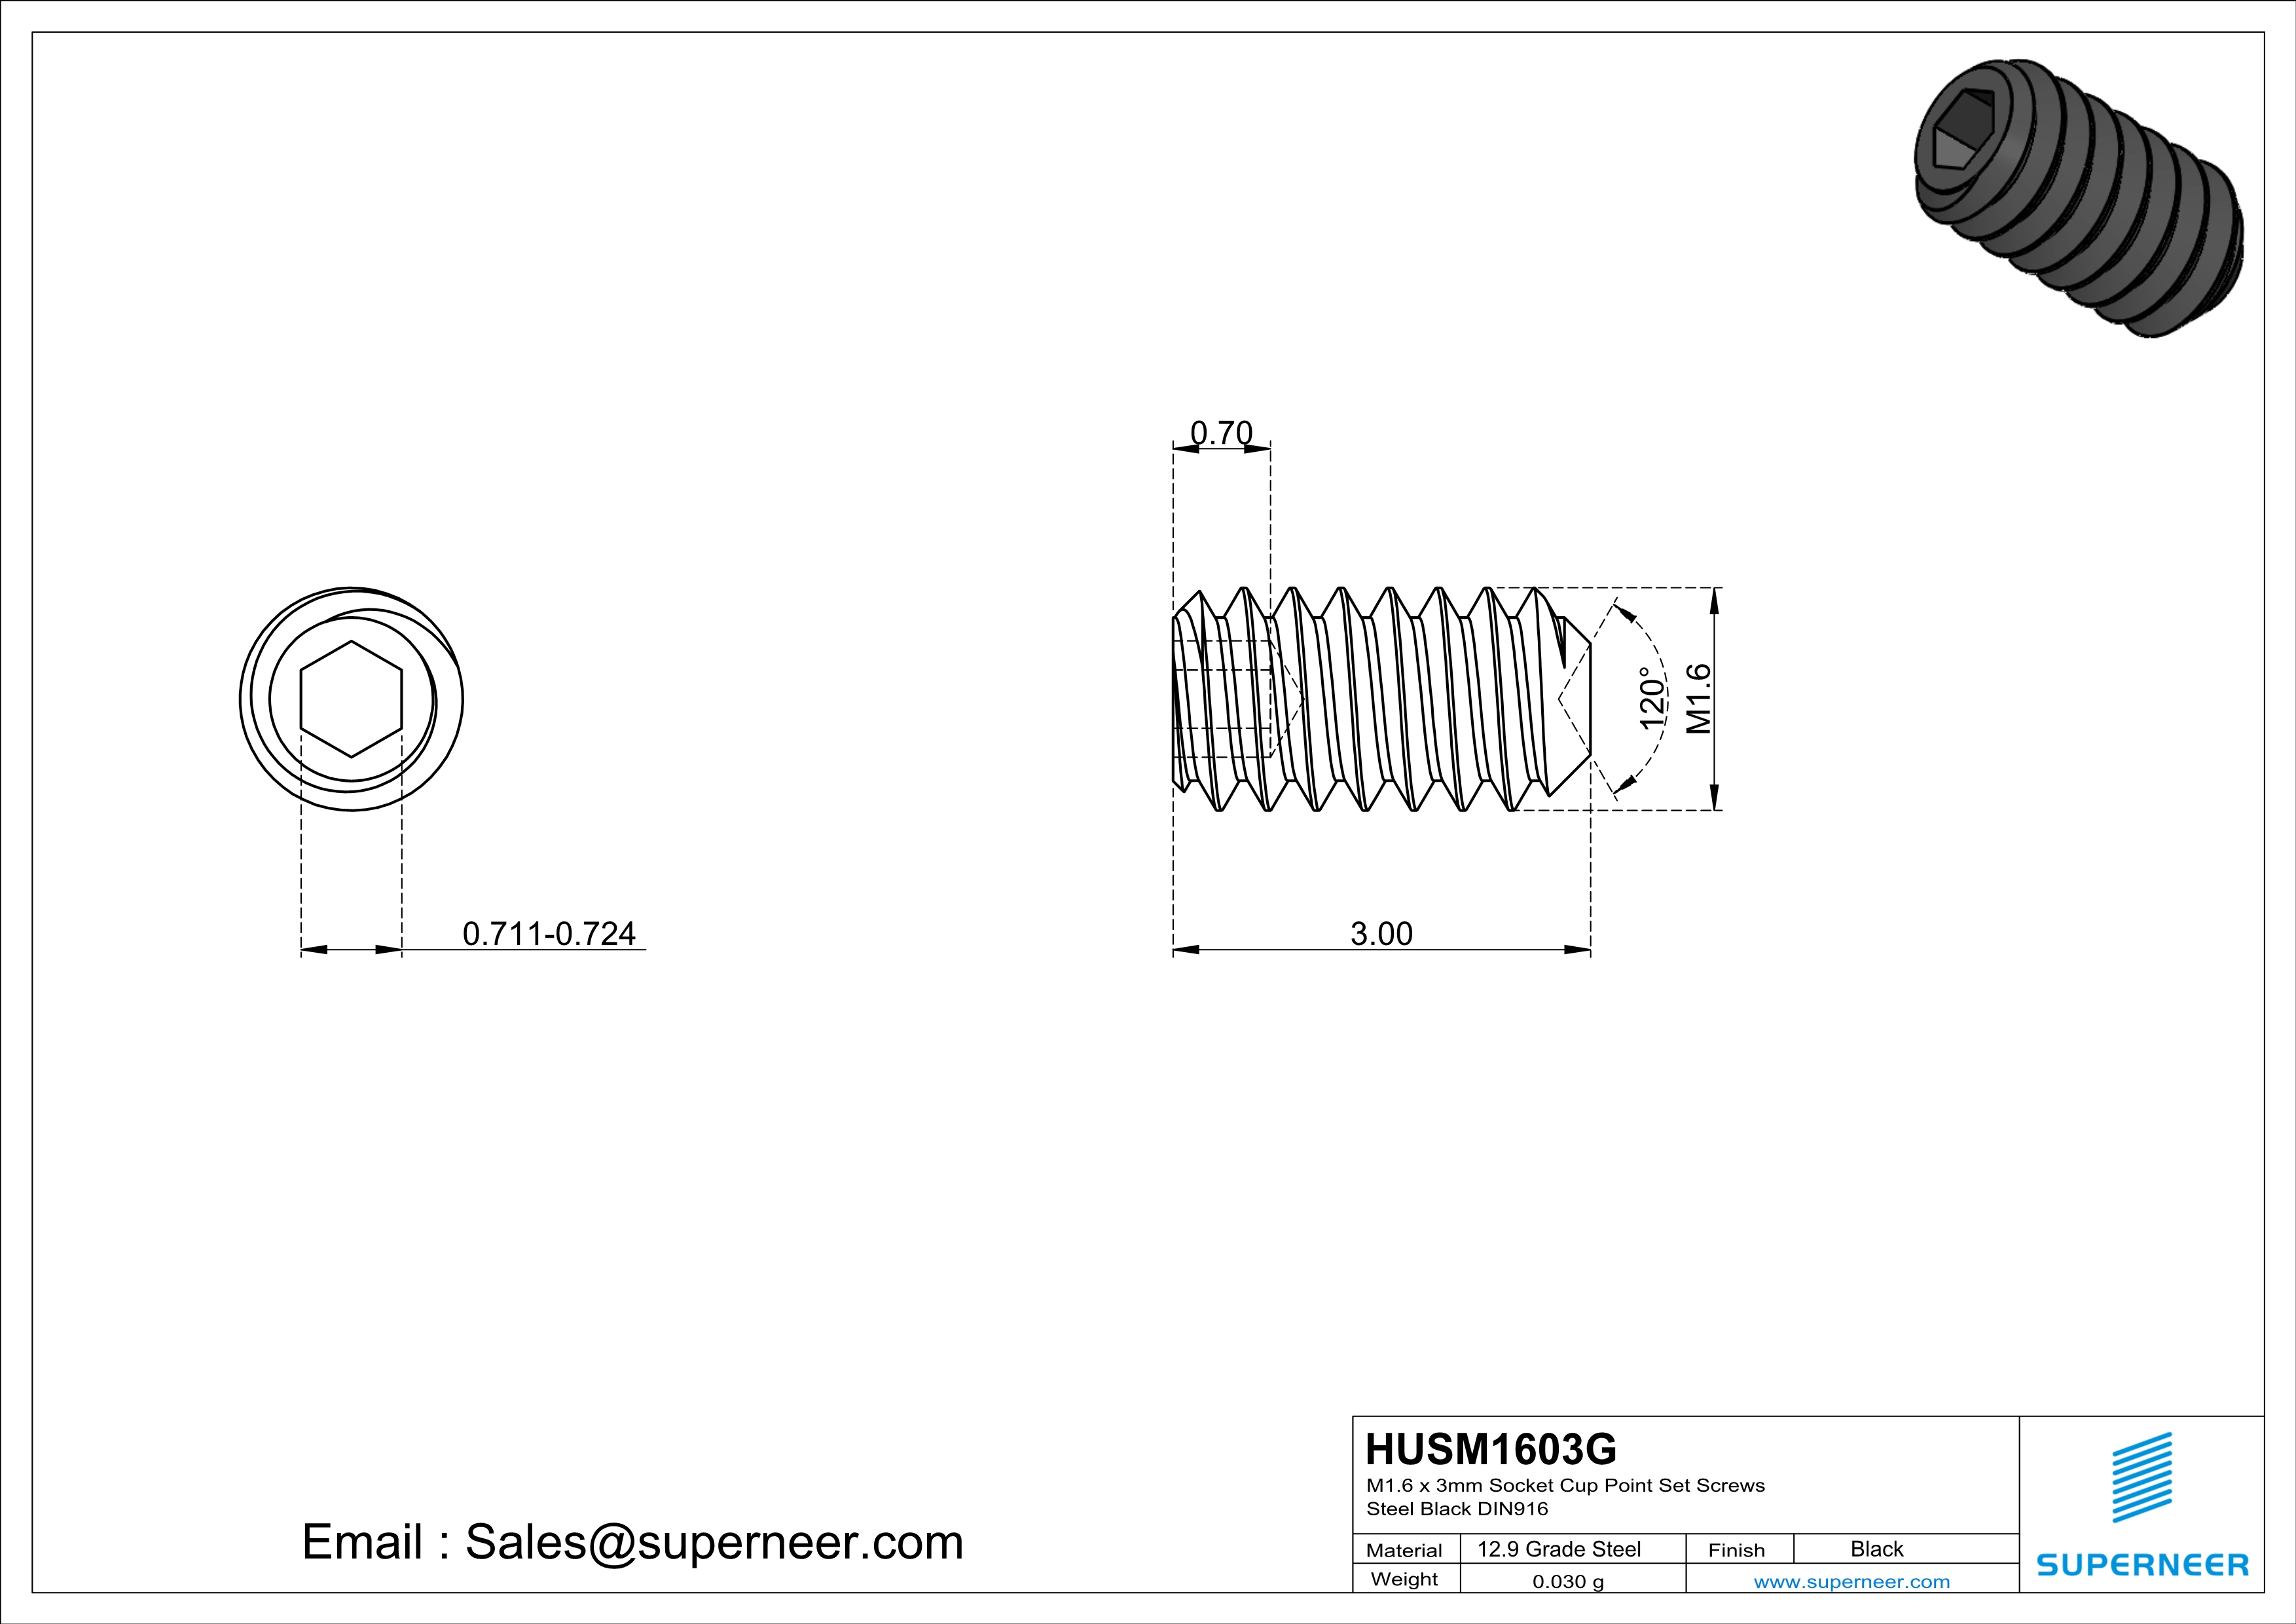 M1.6 x 3mm Socket Cup Point Set Screws 12.9 Carbon Steel Black DIN916